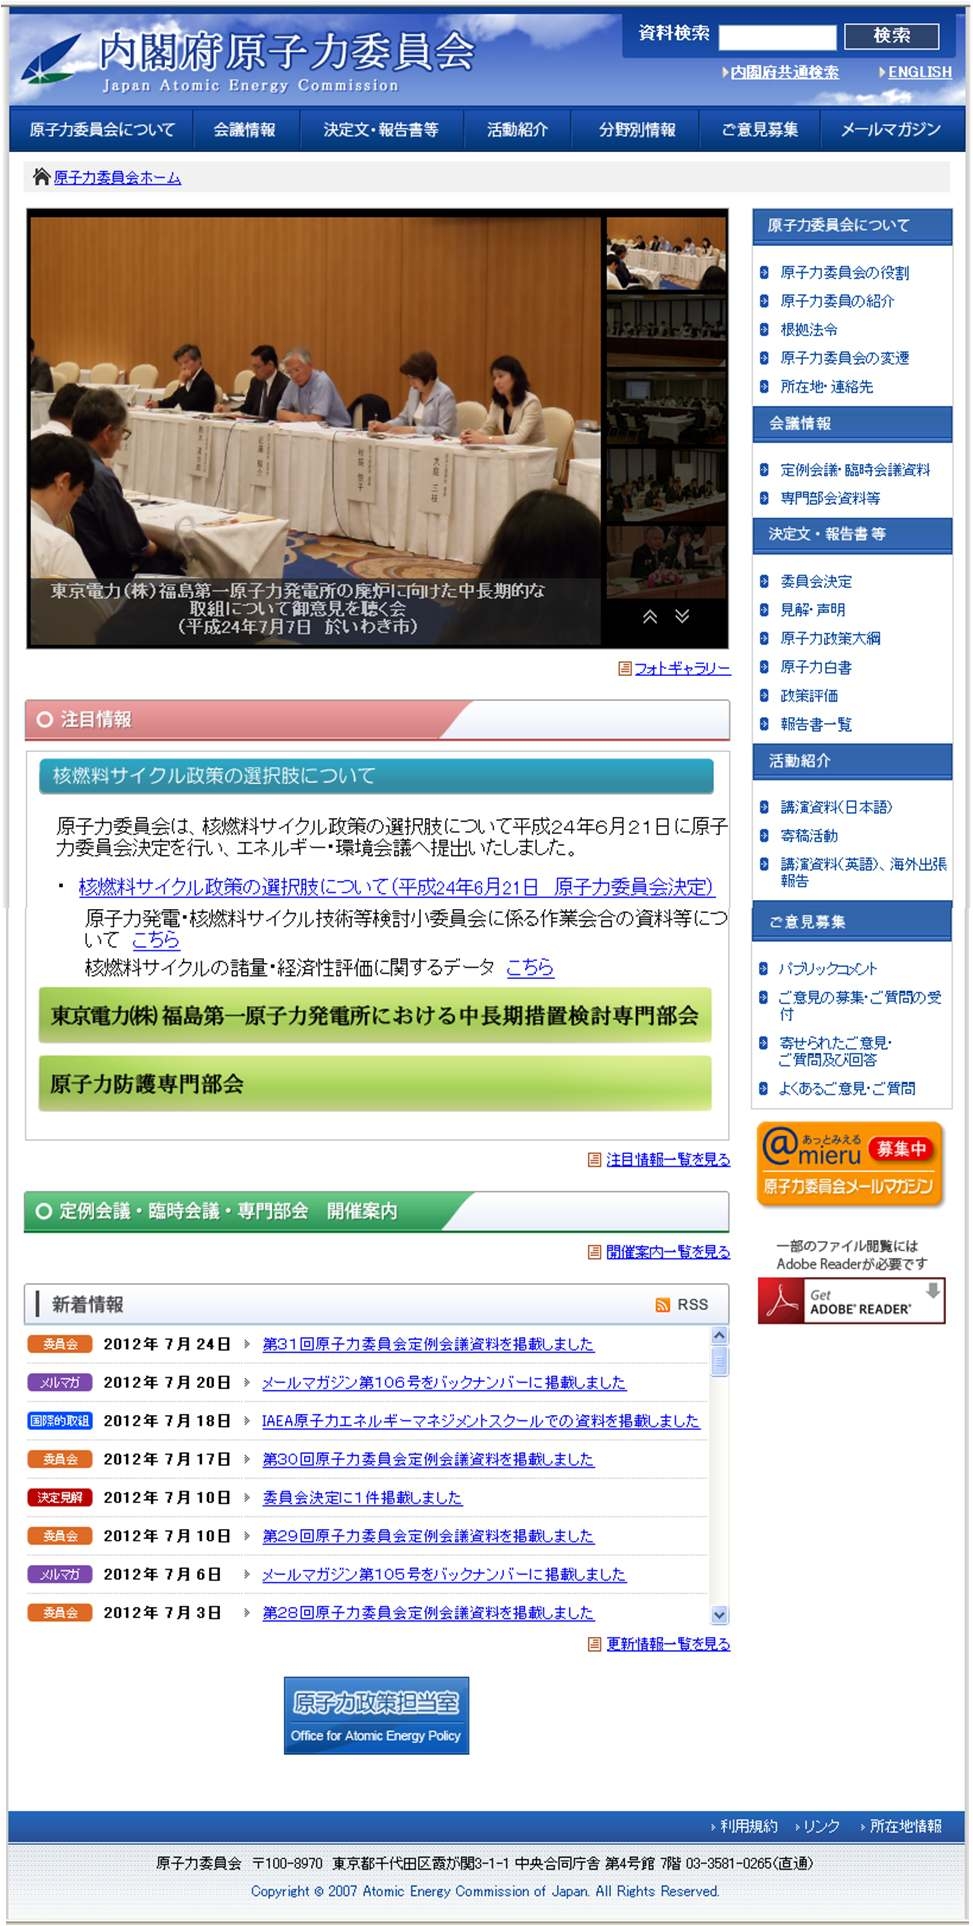 그림 3 일본 원자력위원회 홈페이지